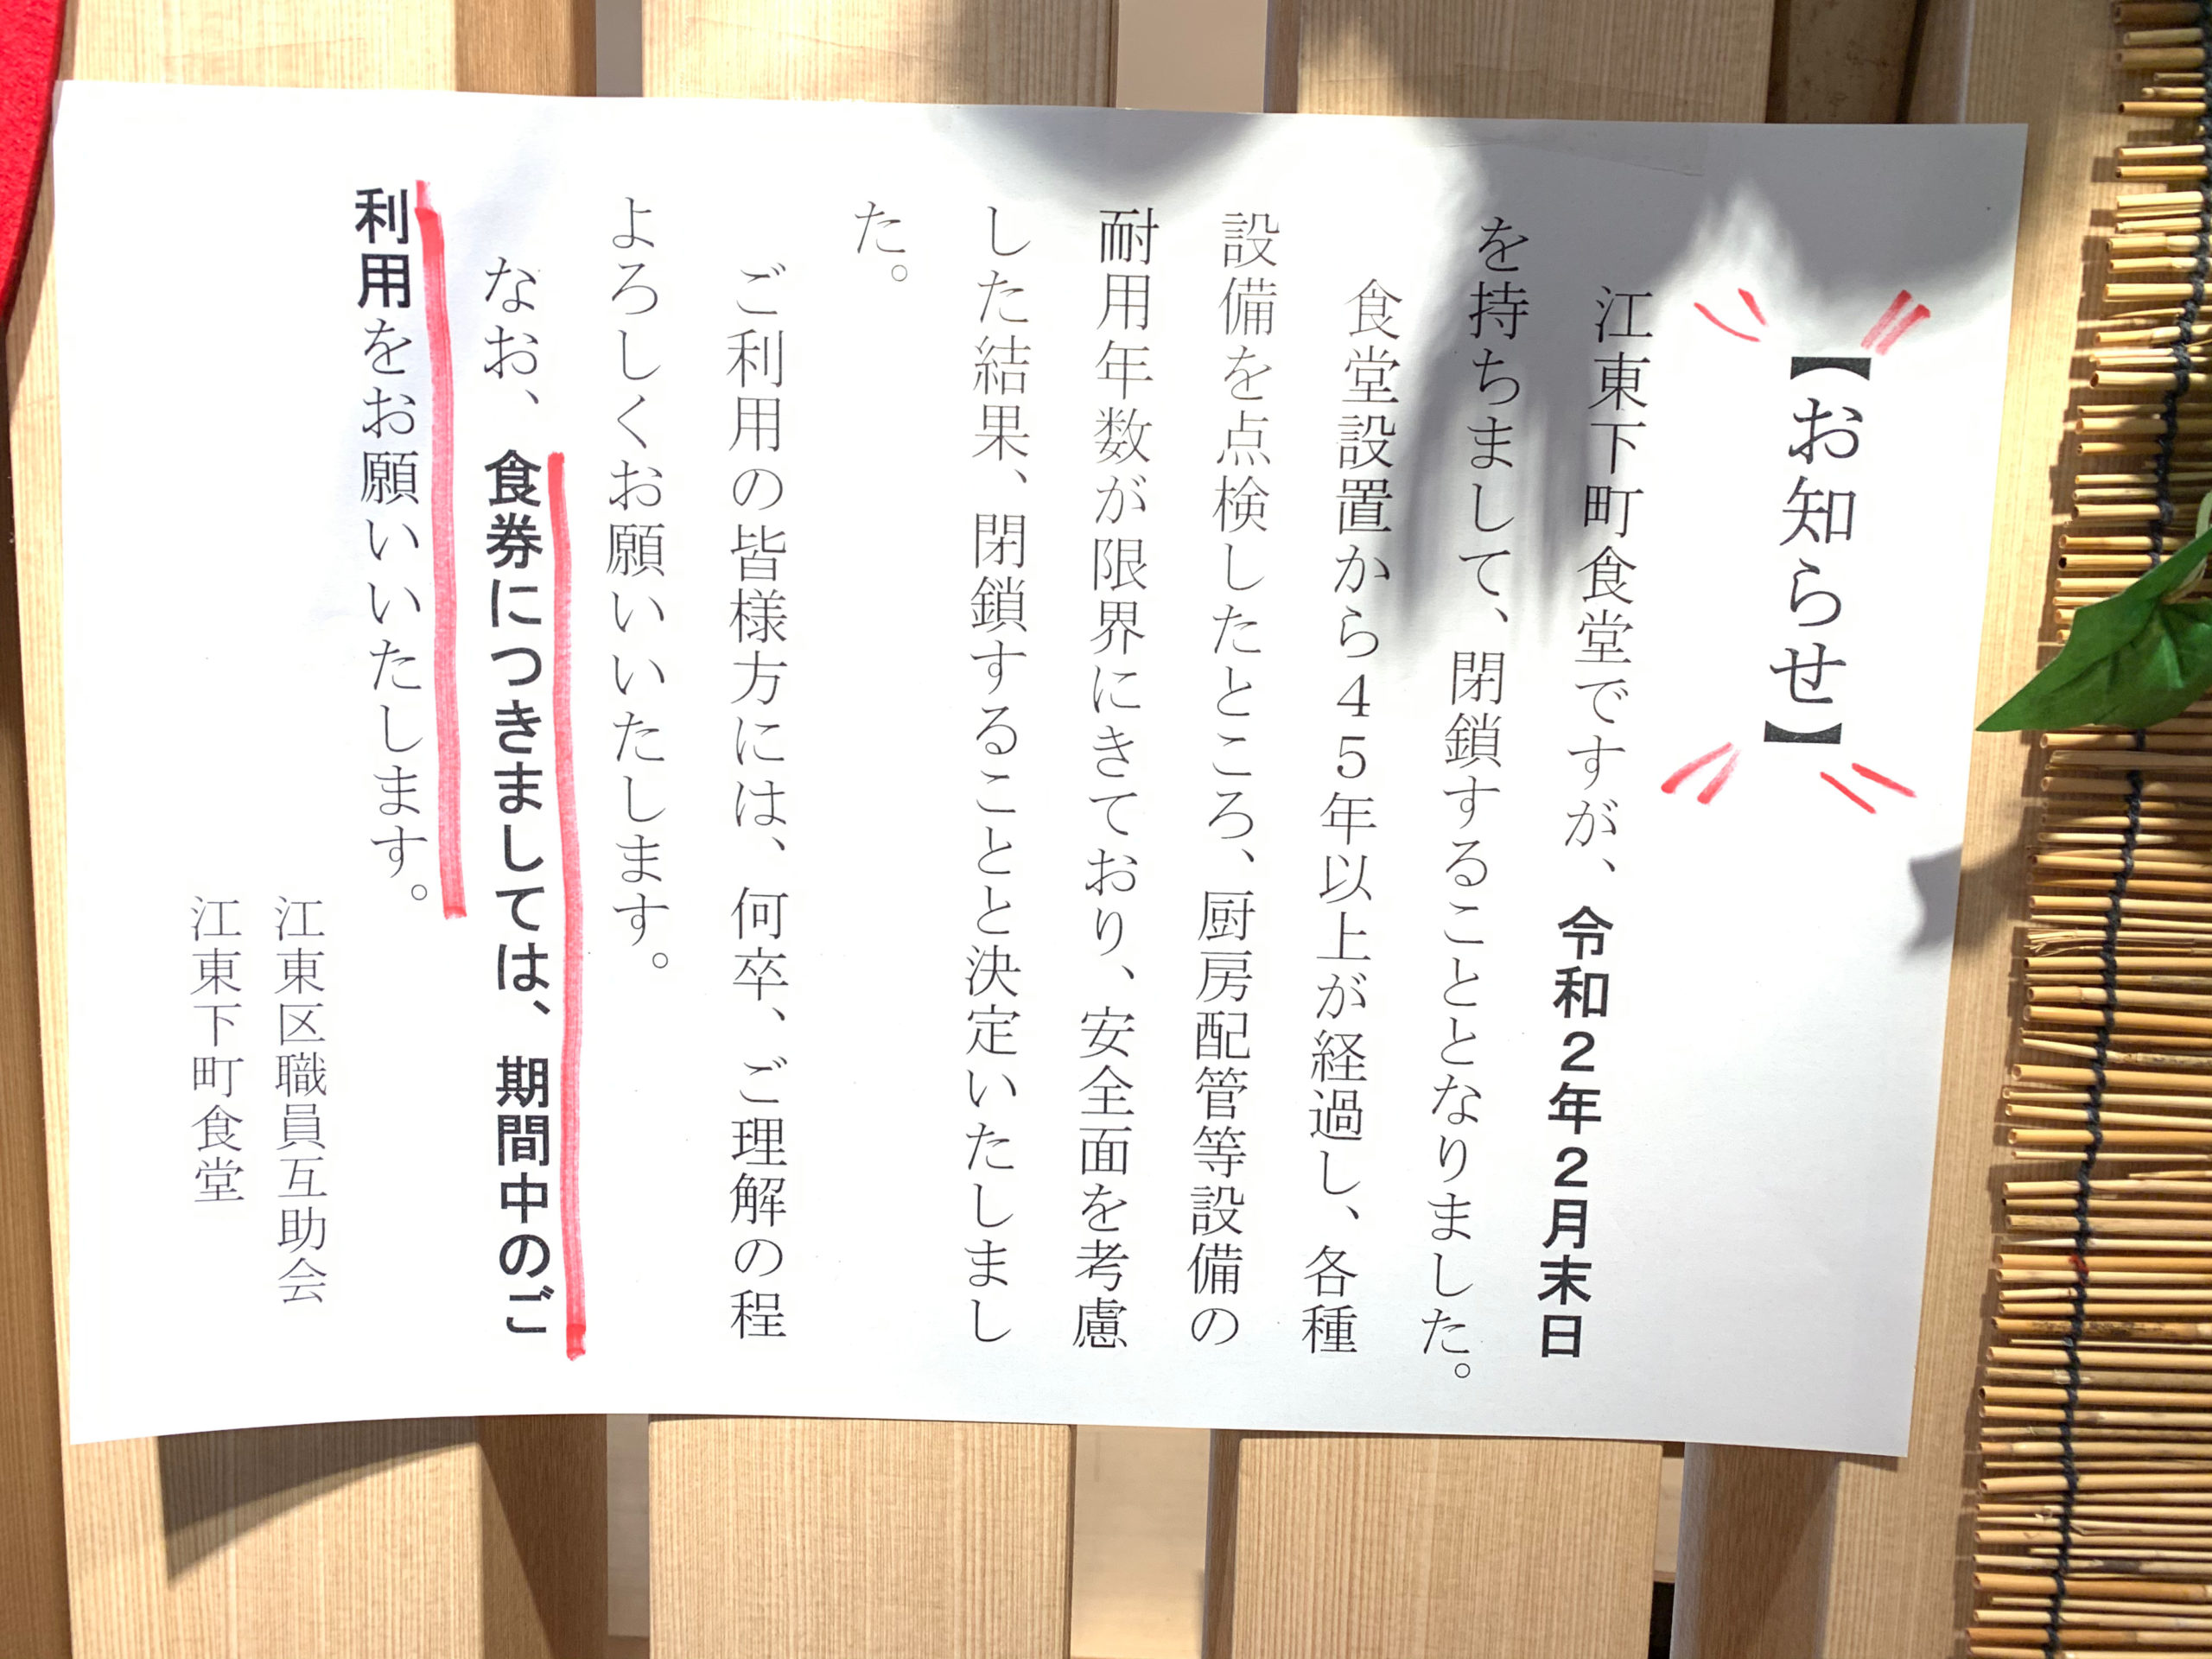 残念なお知らせです。「江東下町食堂」が2月末日をもって閉店致します。